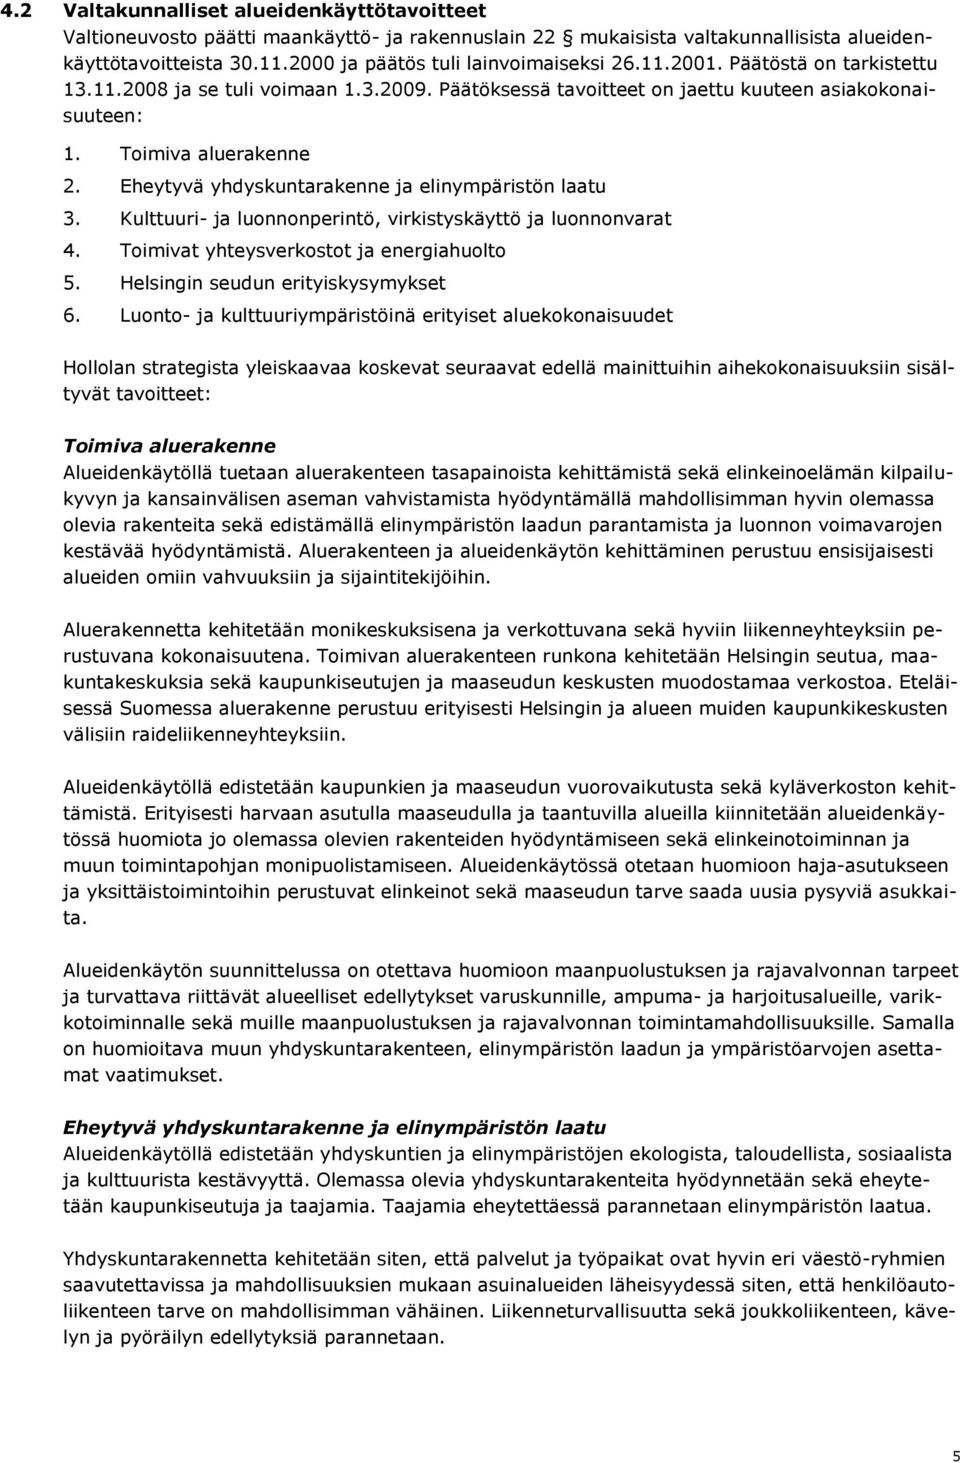 Kulttuuri- ja lunnnperintö, virkistyskäyttö ja lunnnvarat 4. Timivat yhteysverkstt ja energiahult 5. Helsingin seudun erityiskysymykset 6.